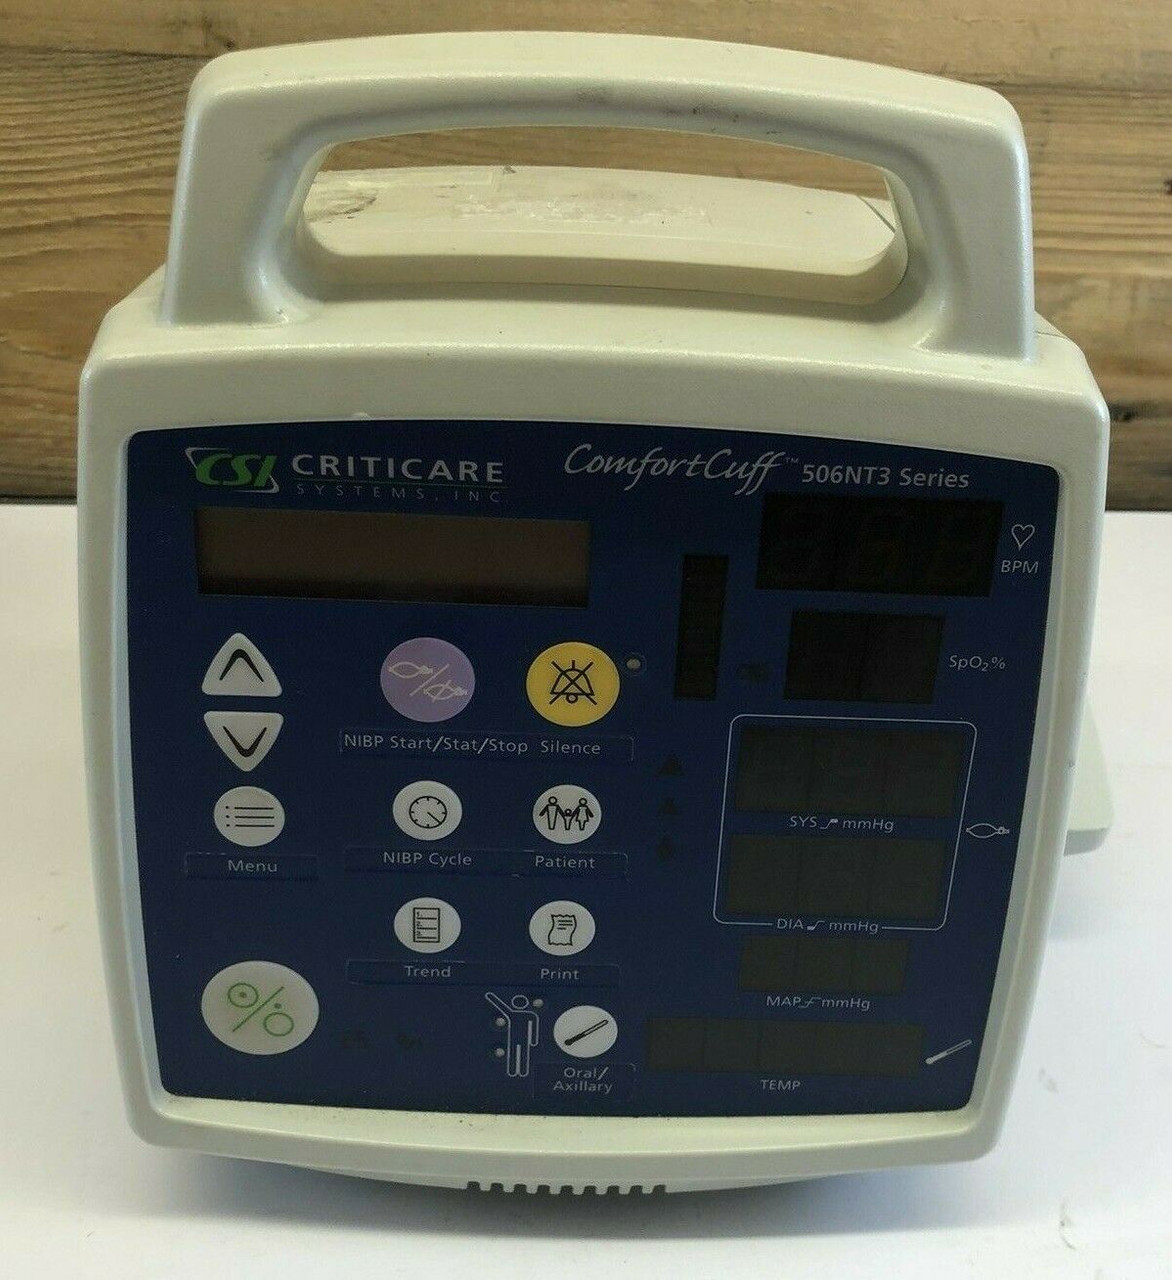 ComfortCuff Series Patient Monitor 506NT3 Criticare 